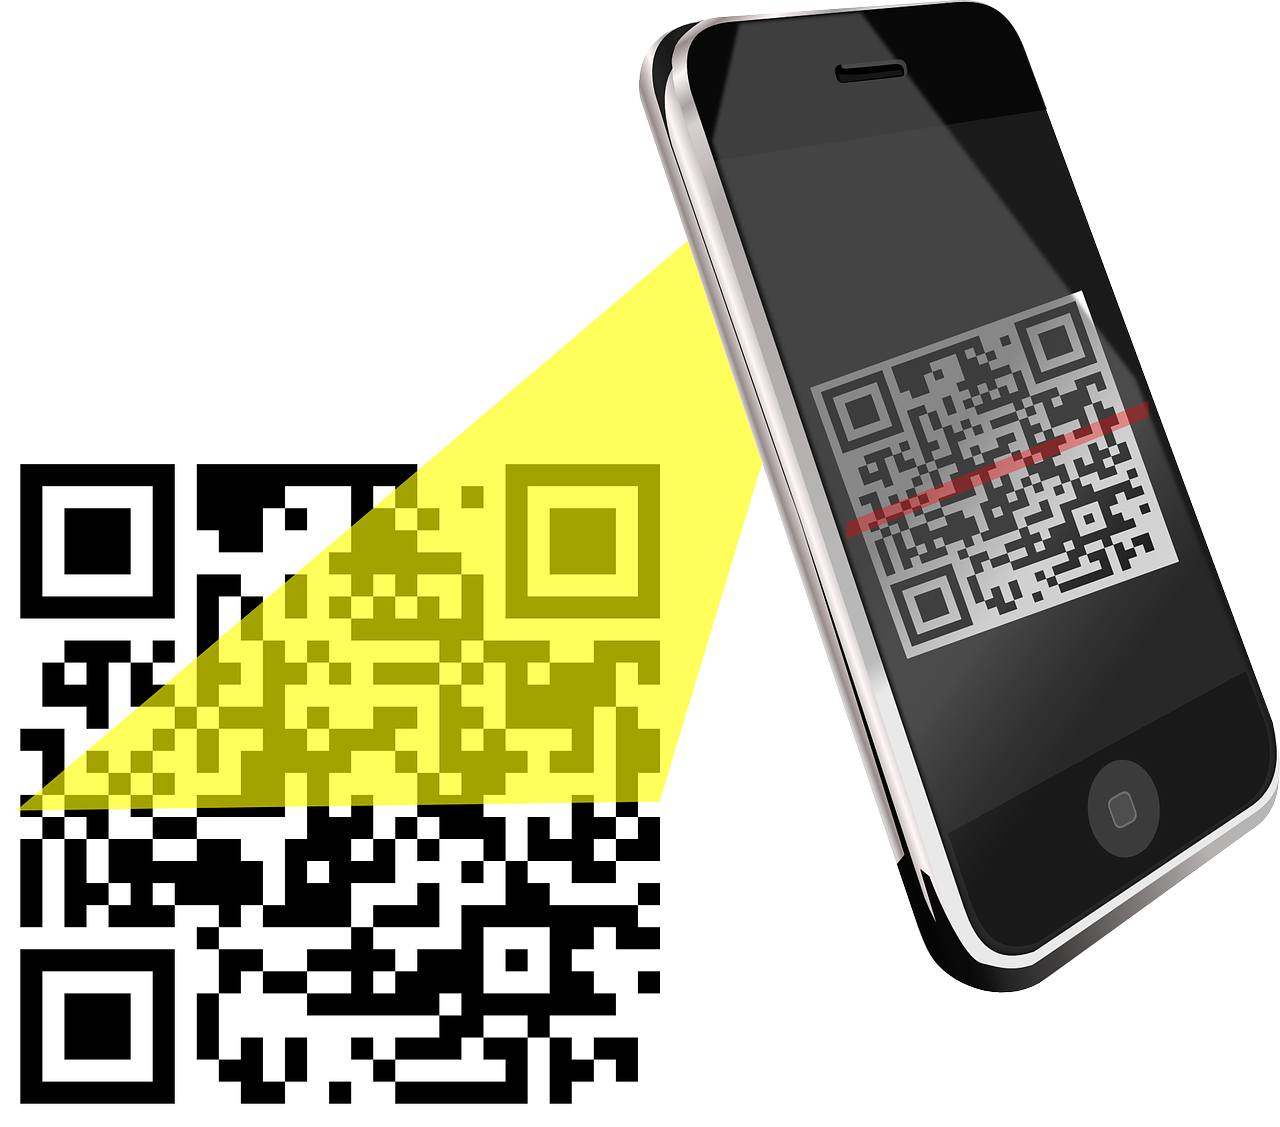 QR код. Смартфон QR код. Сканировать QR код. Иллюстрация смартфона с QR кодом. Скопировать куар